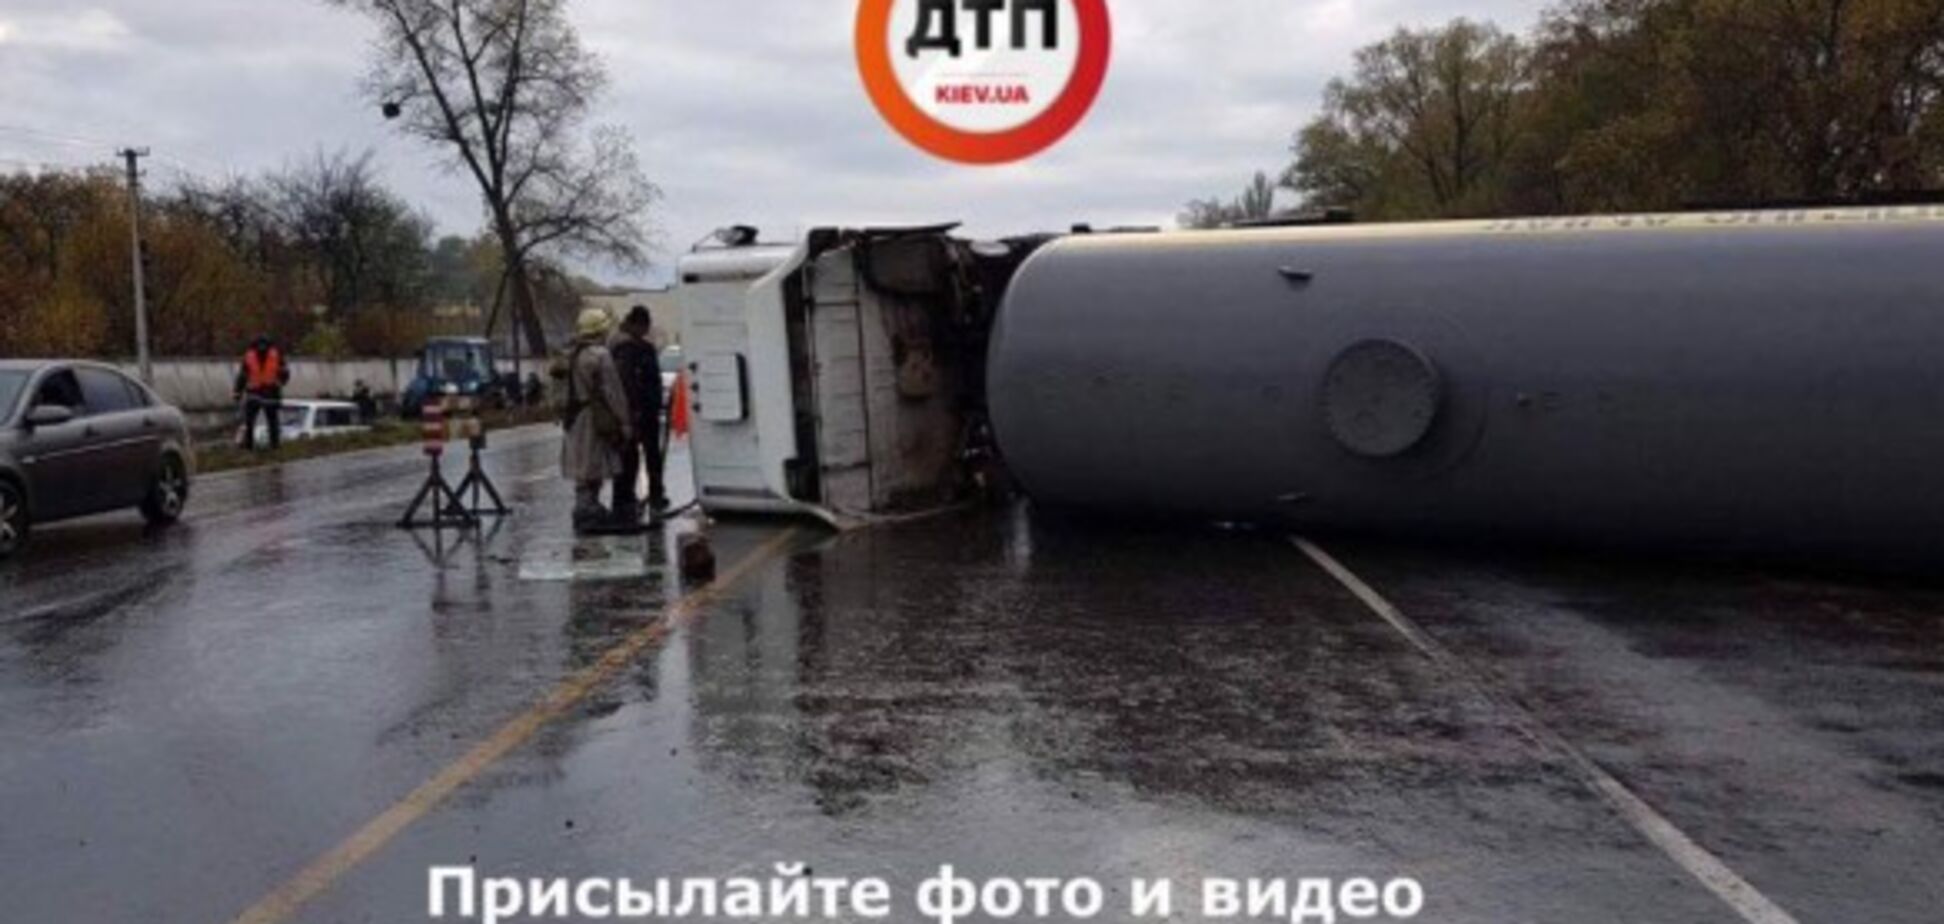 17 тонн аммиака: под Киевом произошло масштабное химическое ДТП 